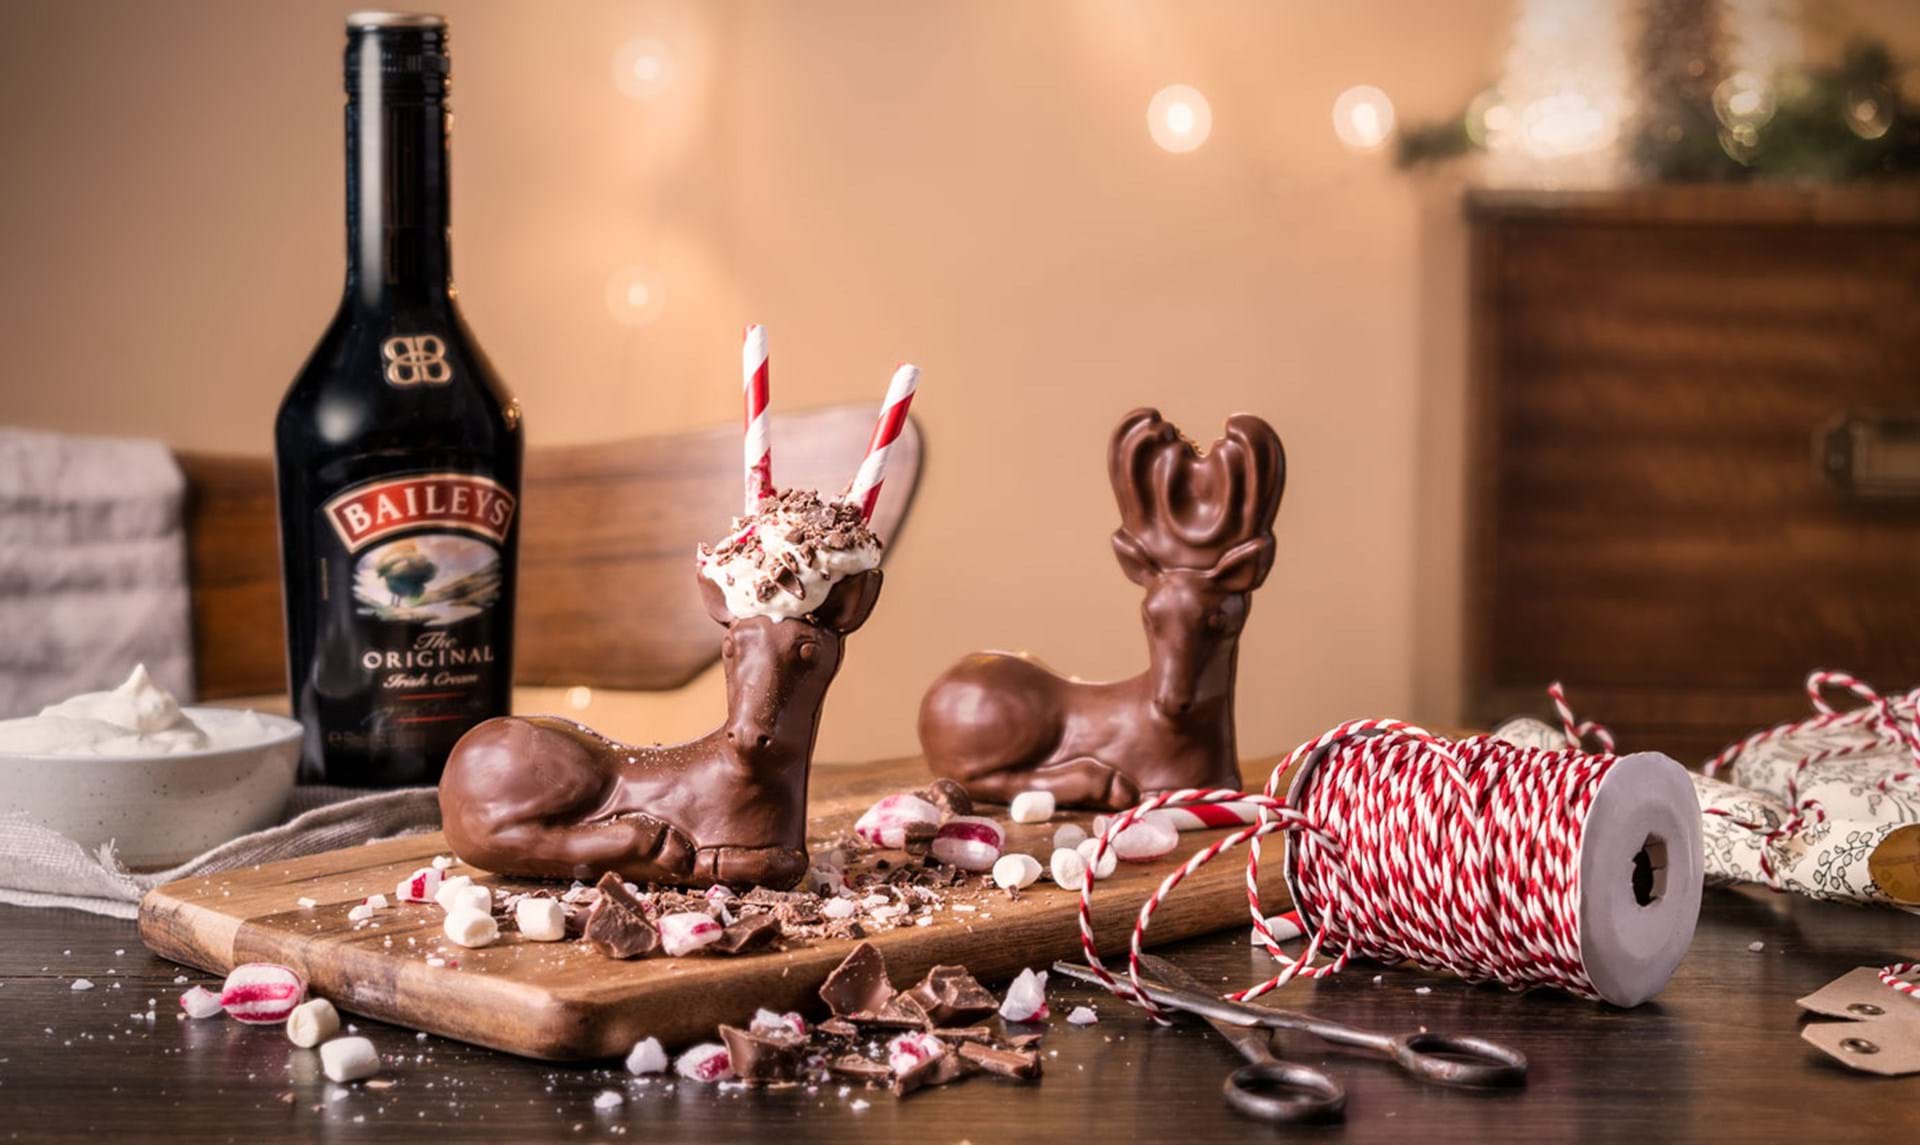 At bygge Blændende tjene Nu kan du drikke din jule-Baileys… af et chokolade-rensdyr - ALT.dk